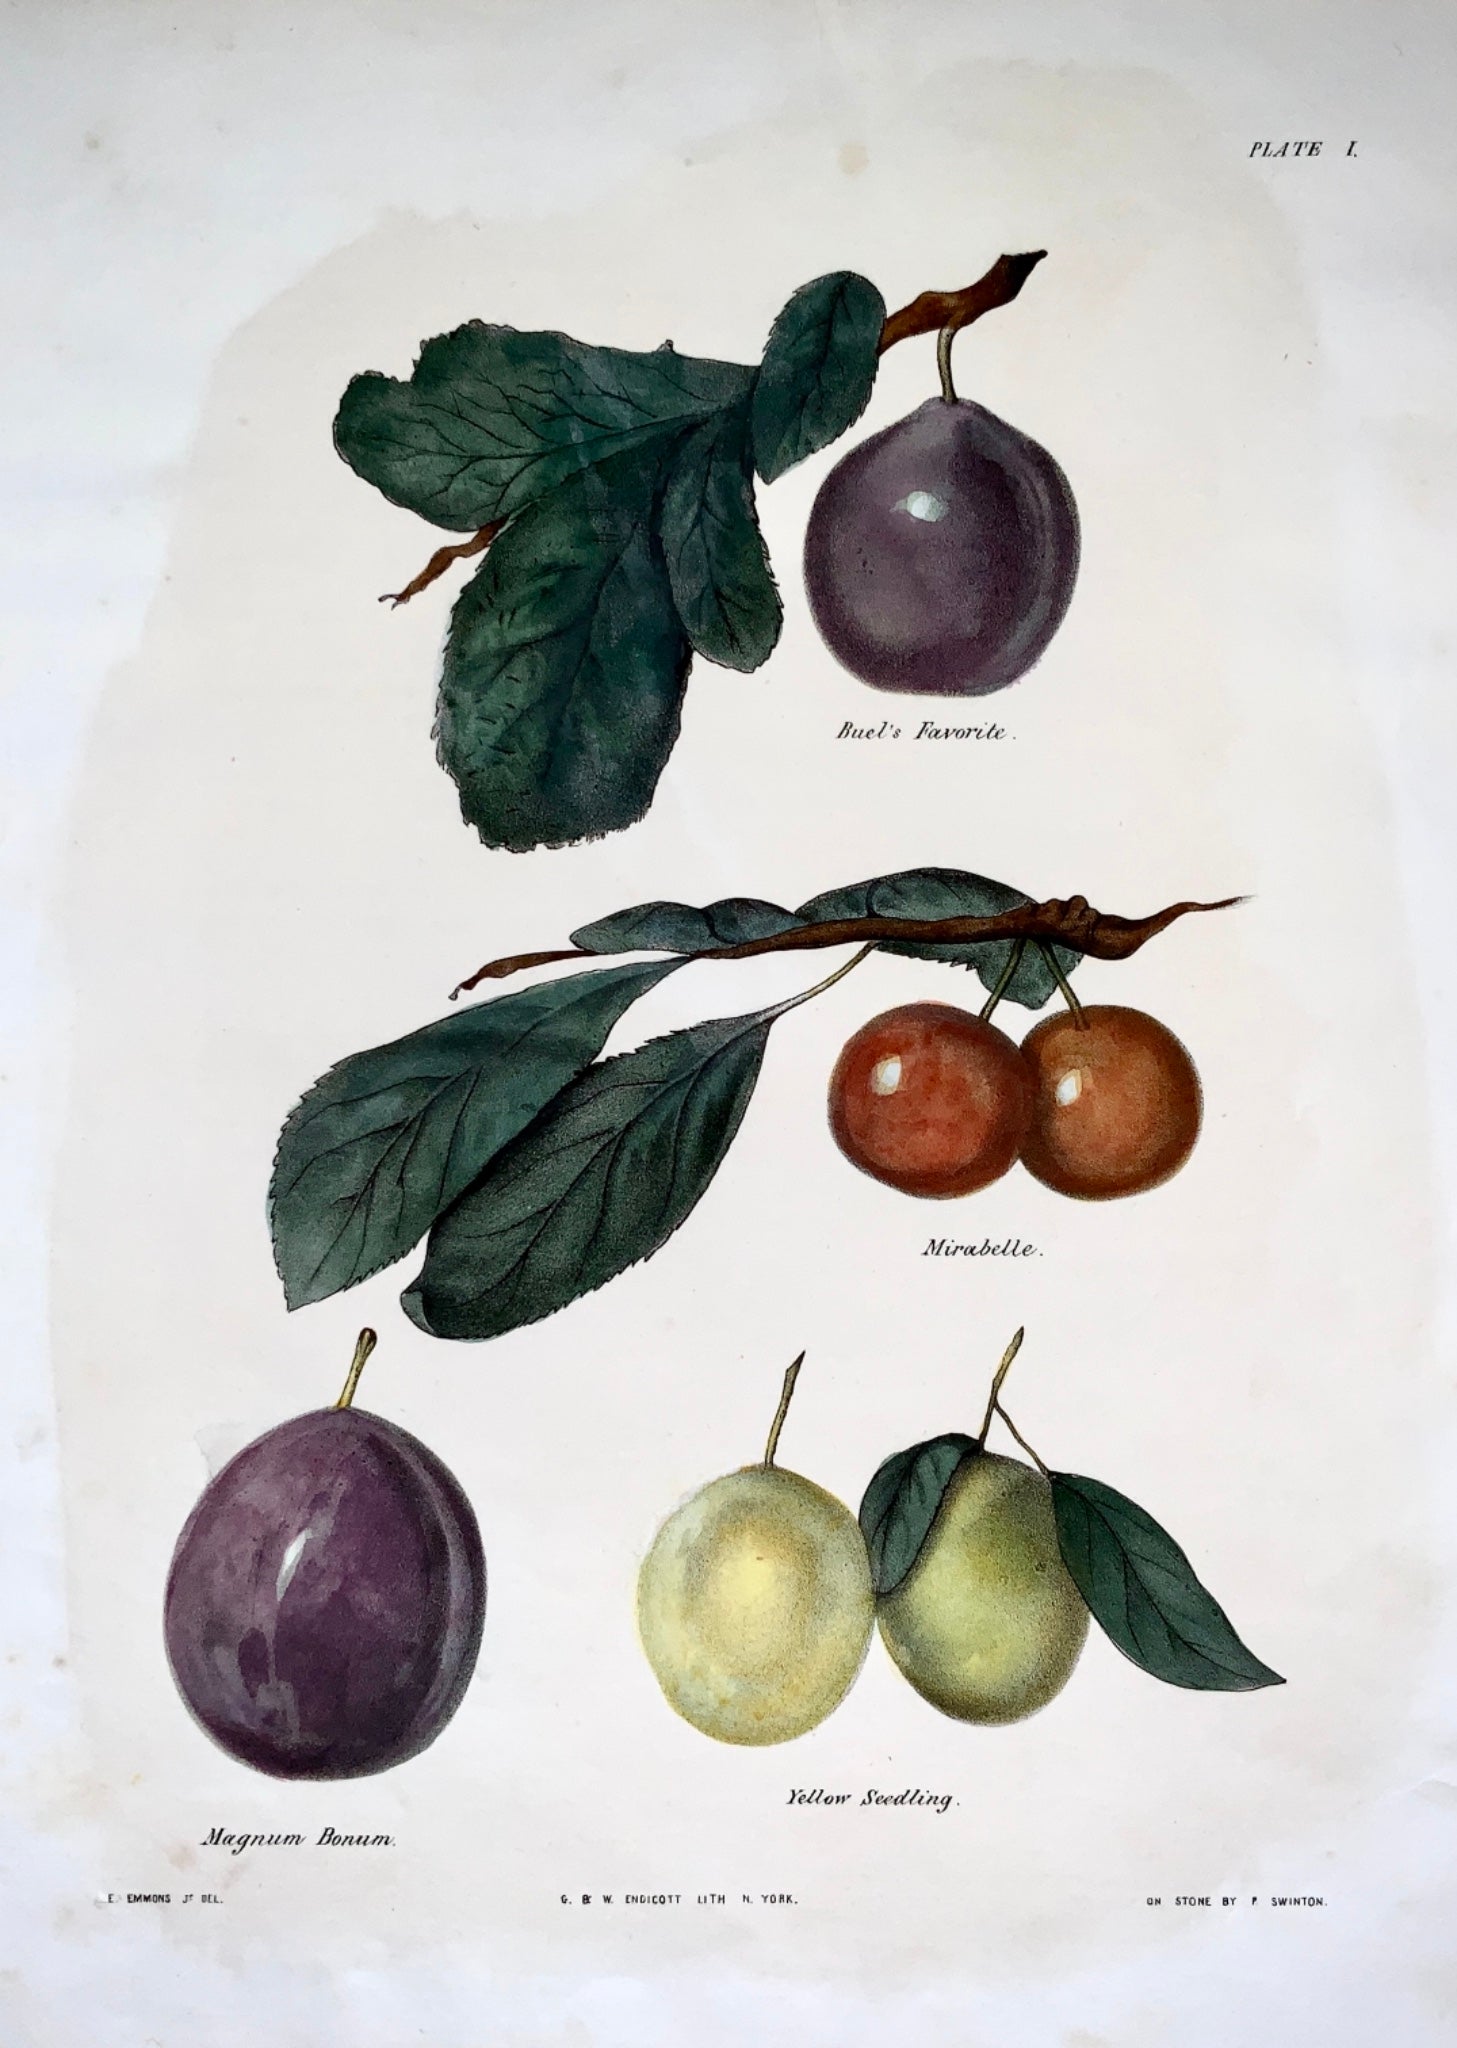 1830 c Edmond del; P. Swinton - Fruit: PLUMS - hand coloured stone lithograph